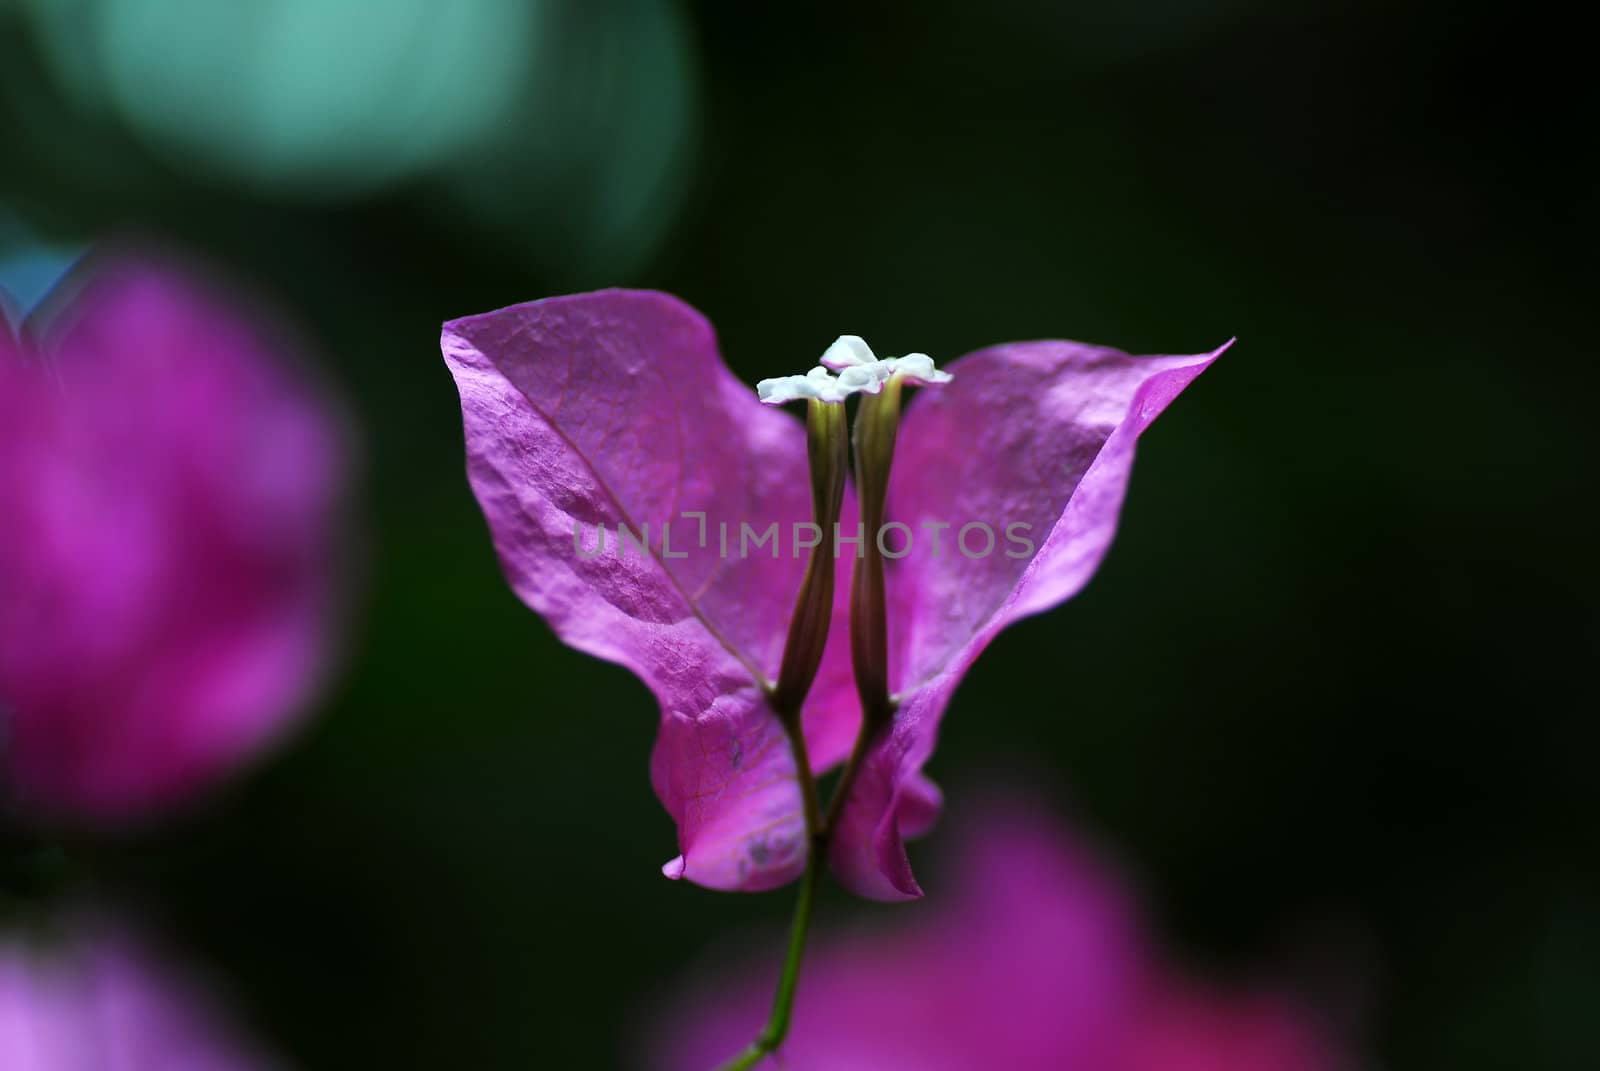 Summer oriental flower on dark background blured by lens.